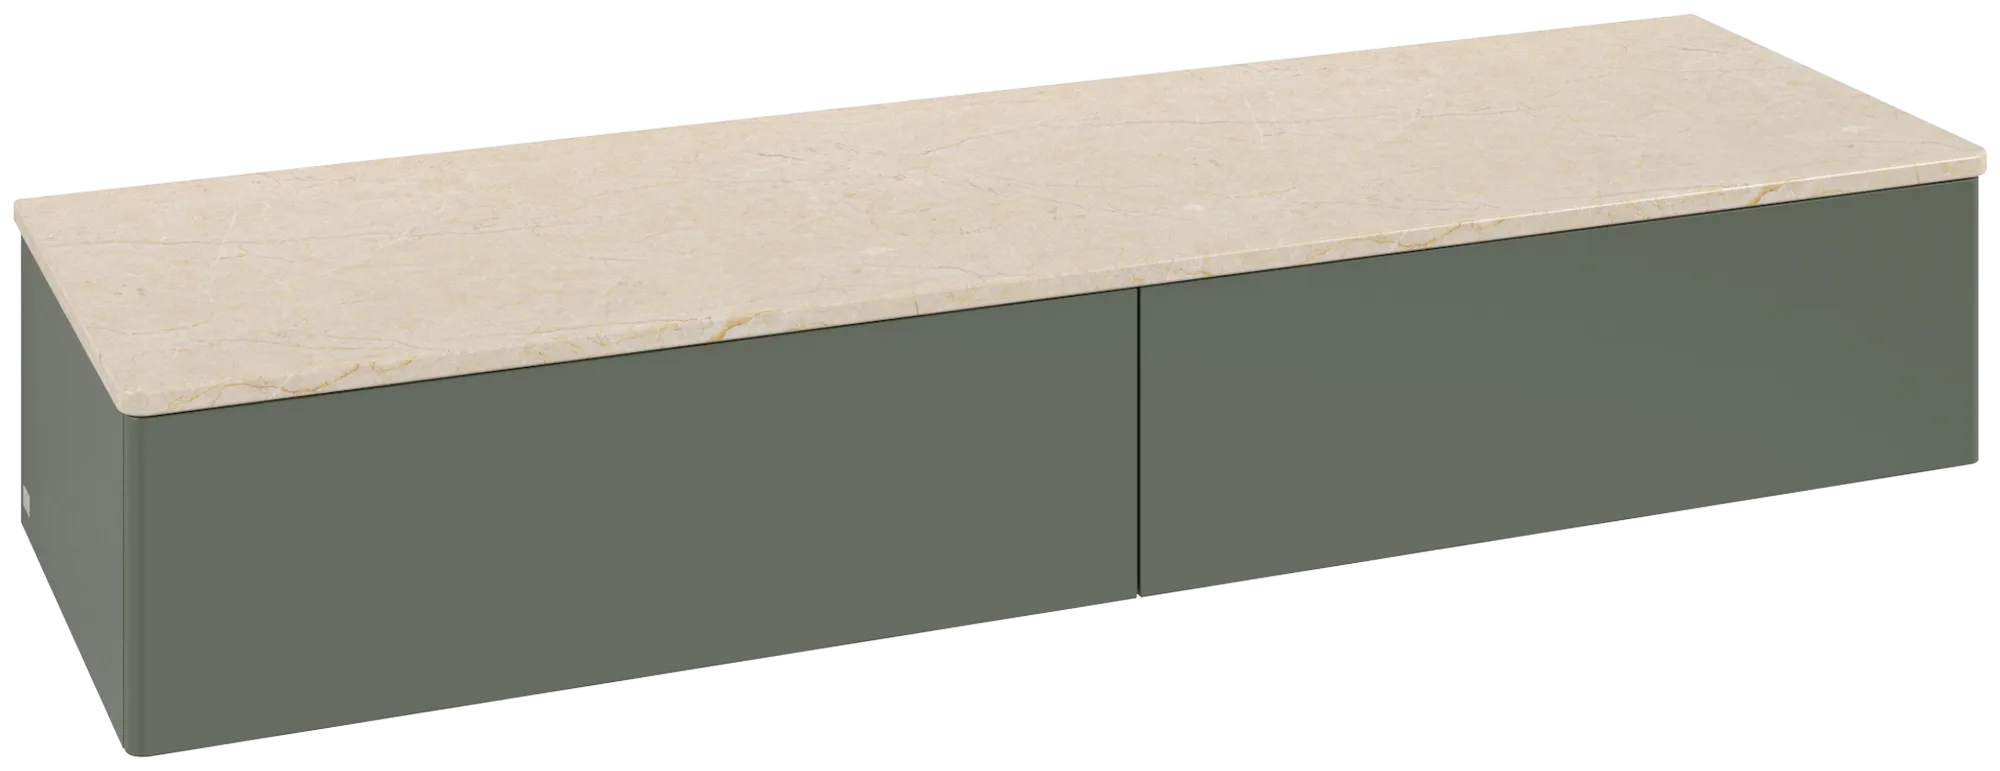 Bild von VILLEROY BOCH Antao Sideboard, 2 Auszüge, 1600 x 268 x 500 mm, Front ohne Struktur, Leaf Green Matt Lacquer / Botticino #K42003HL